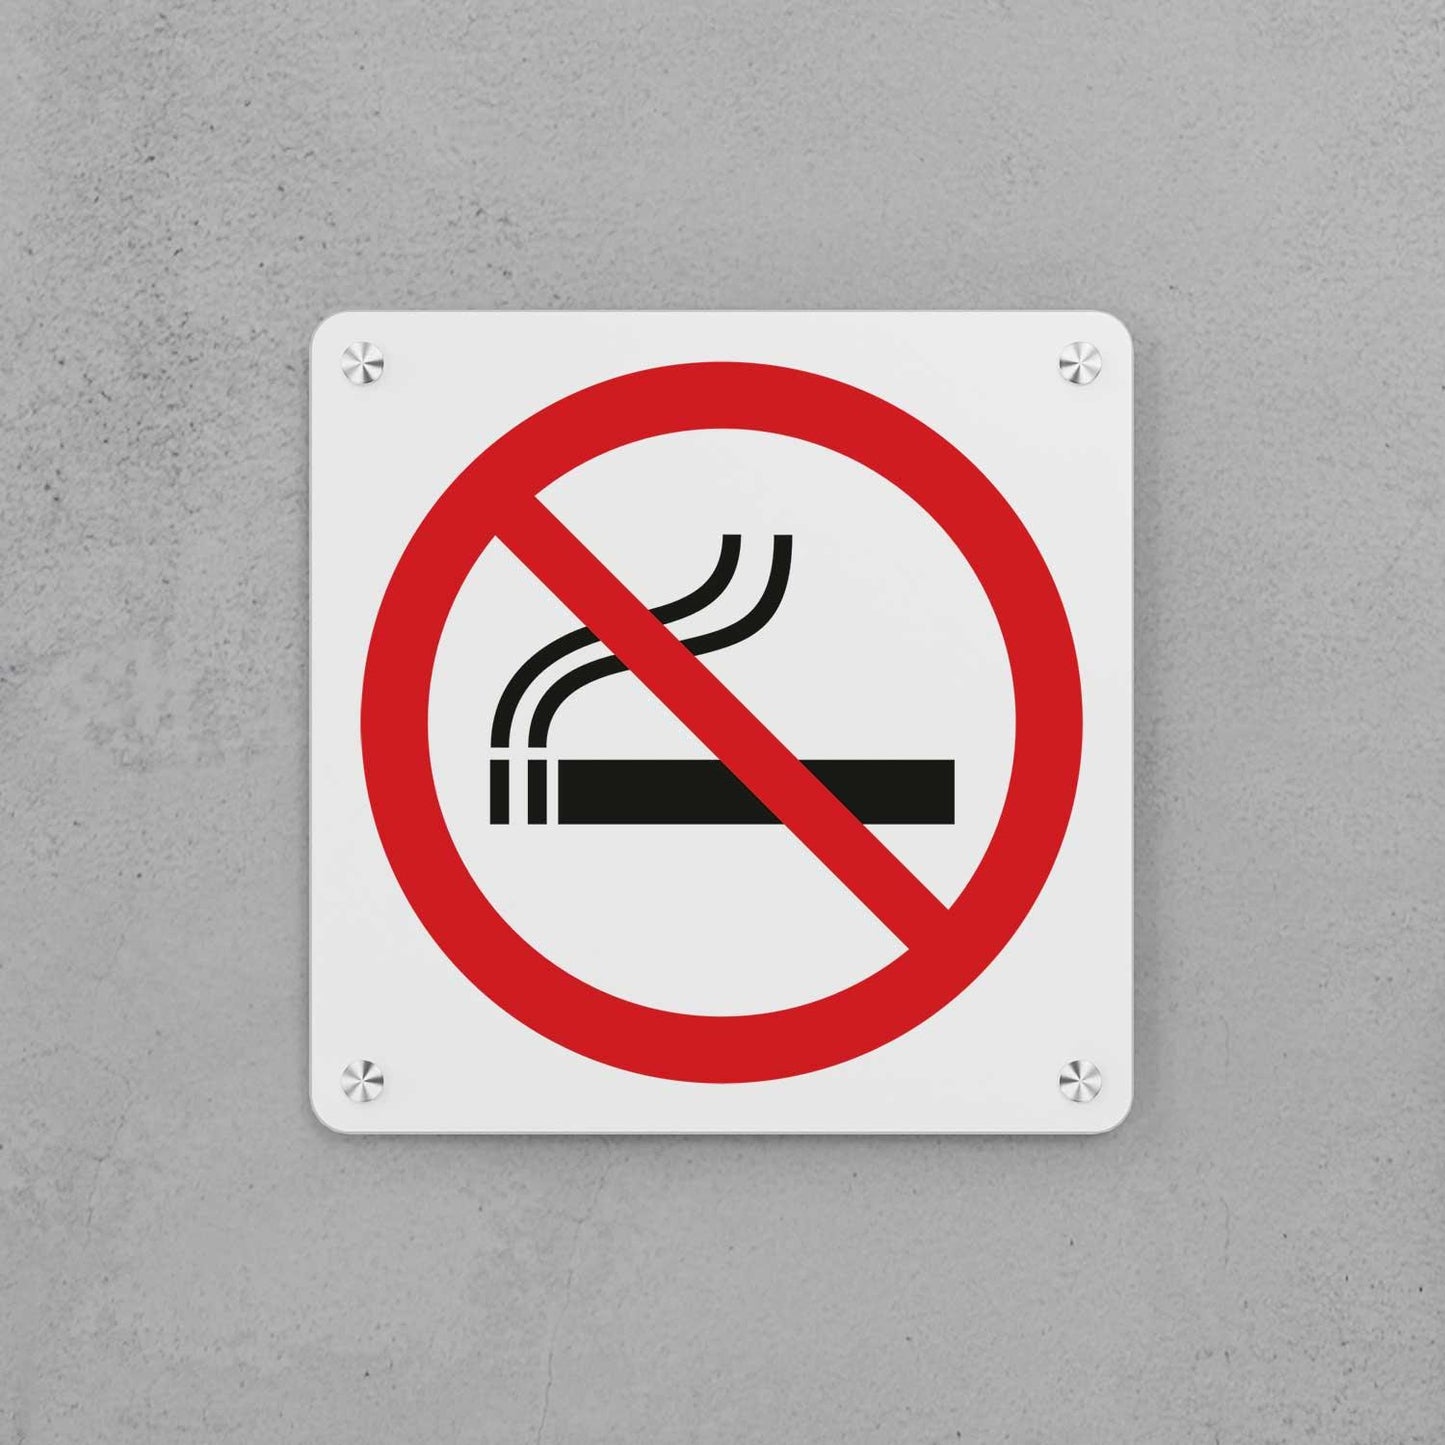 No Smoking Sign - Housenama